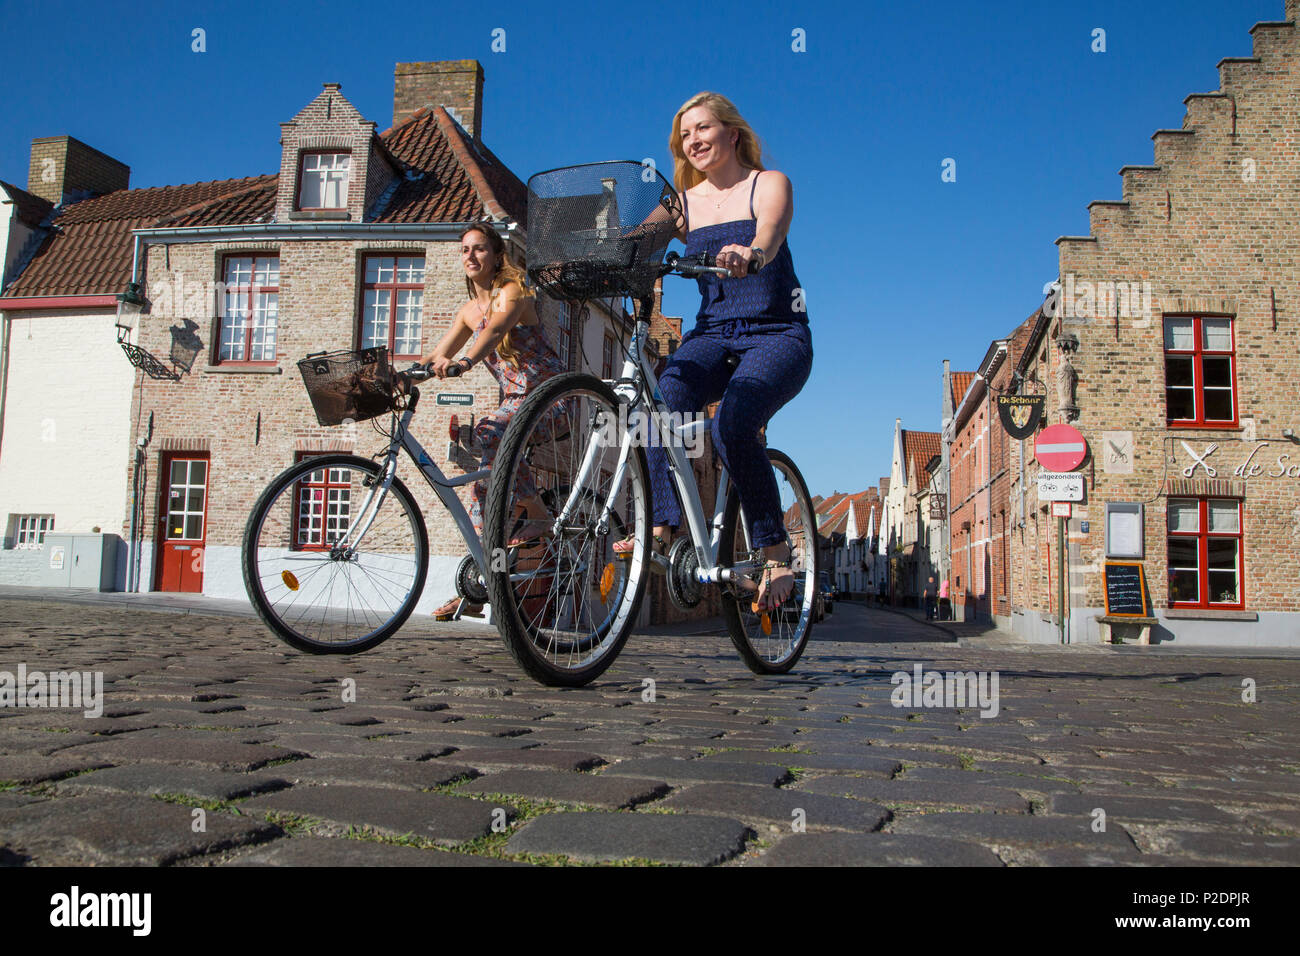 Dos jóvenes mujeres en bicicleta en una calle adoquinada, cerca de Coupure Marina, brujas, brujas, Flandes, Bélgica Foto de stock